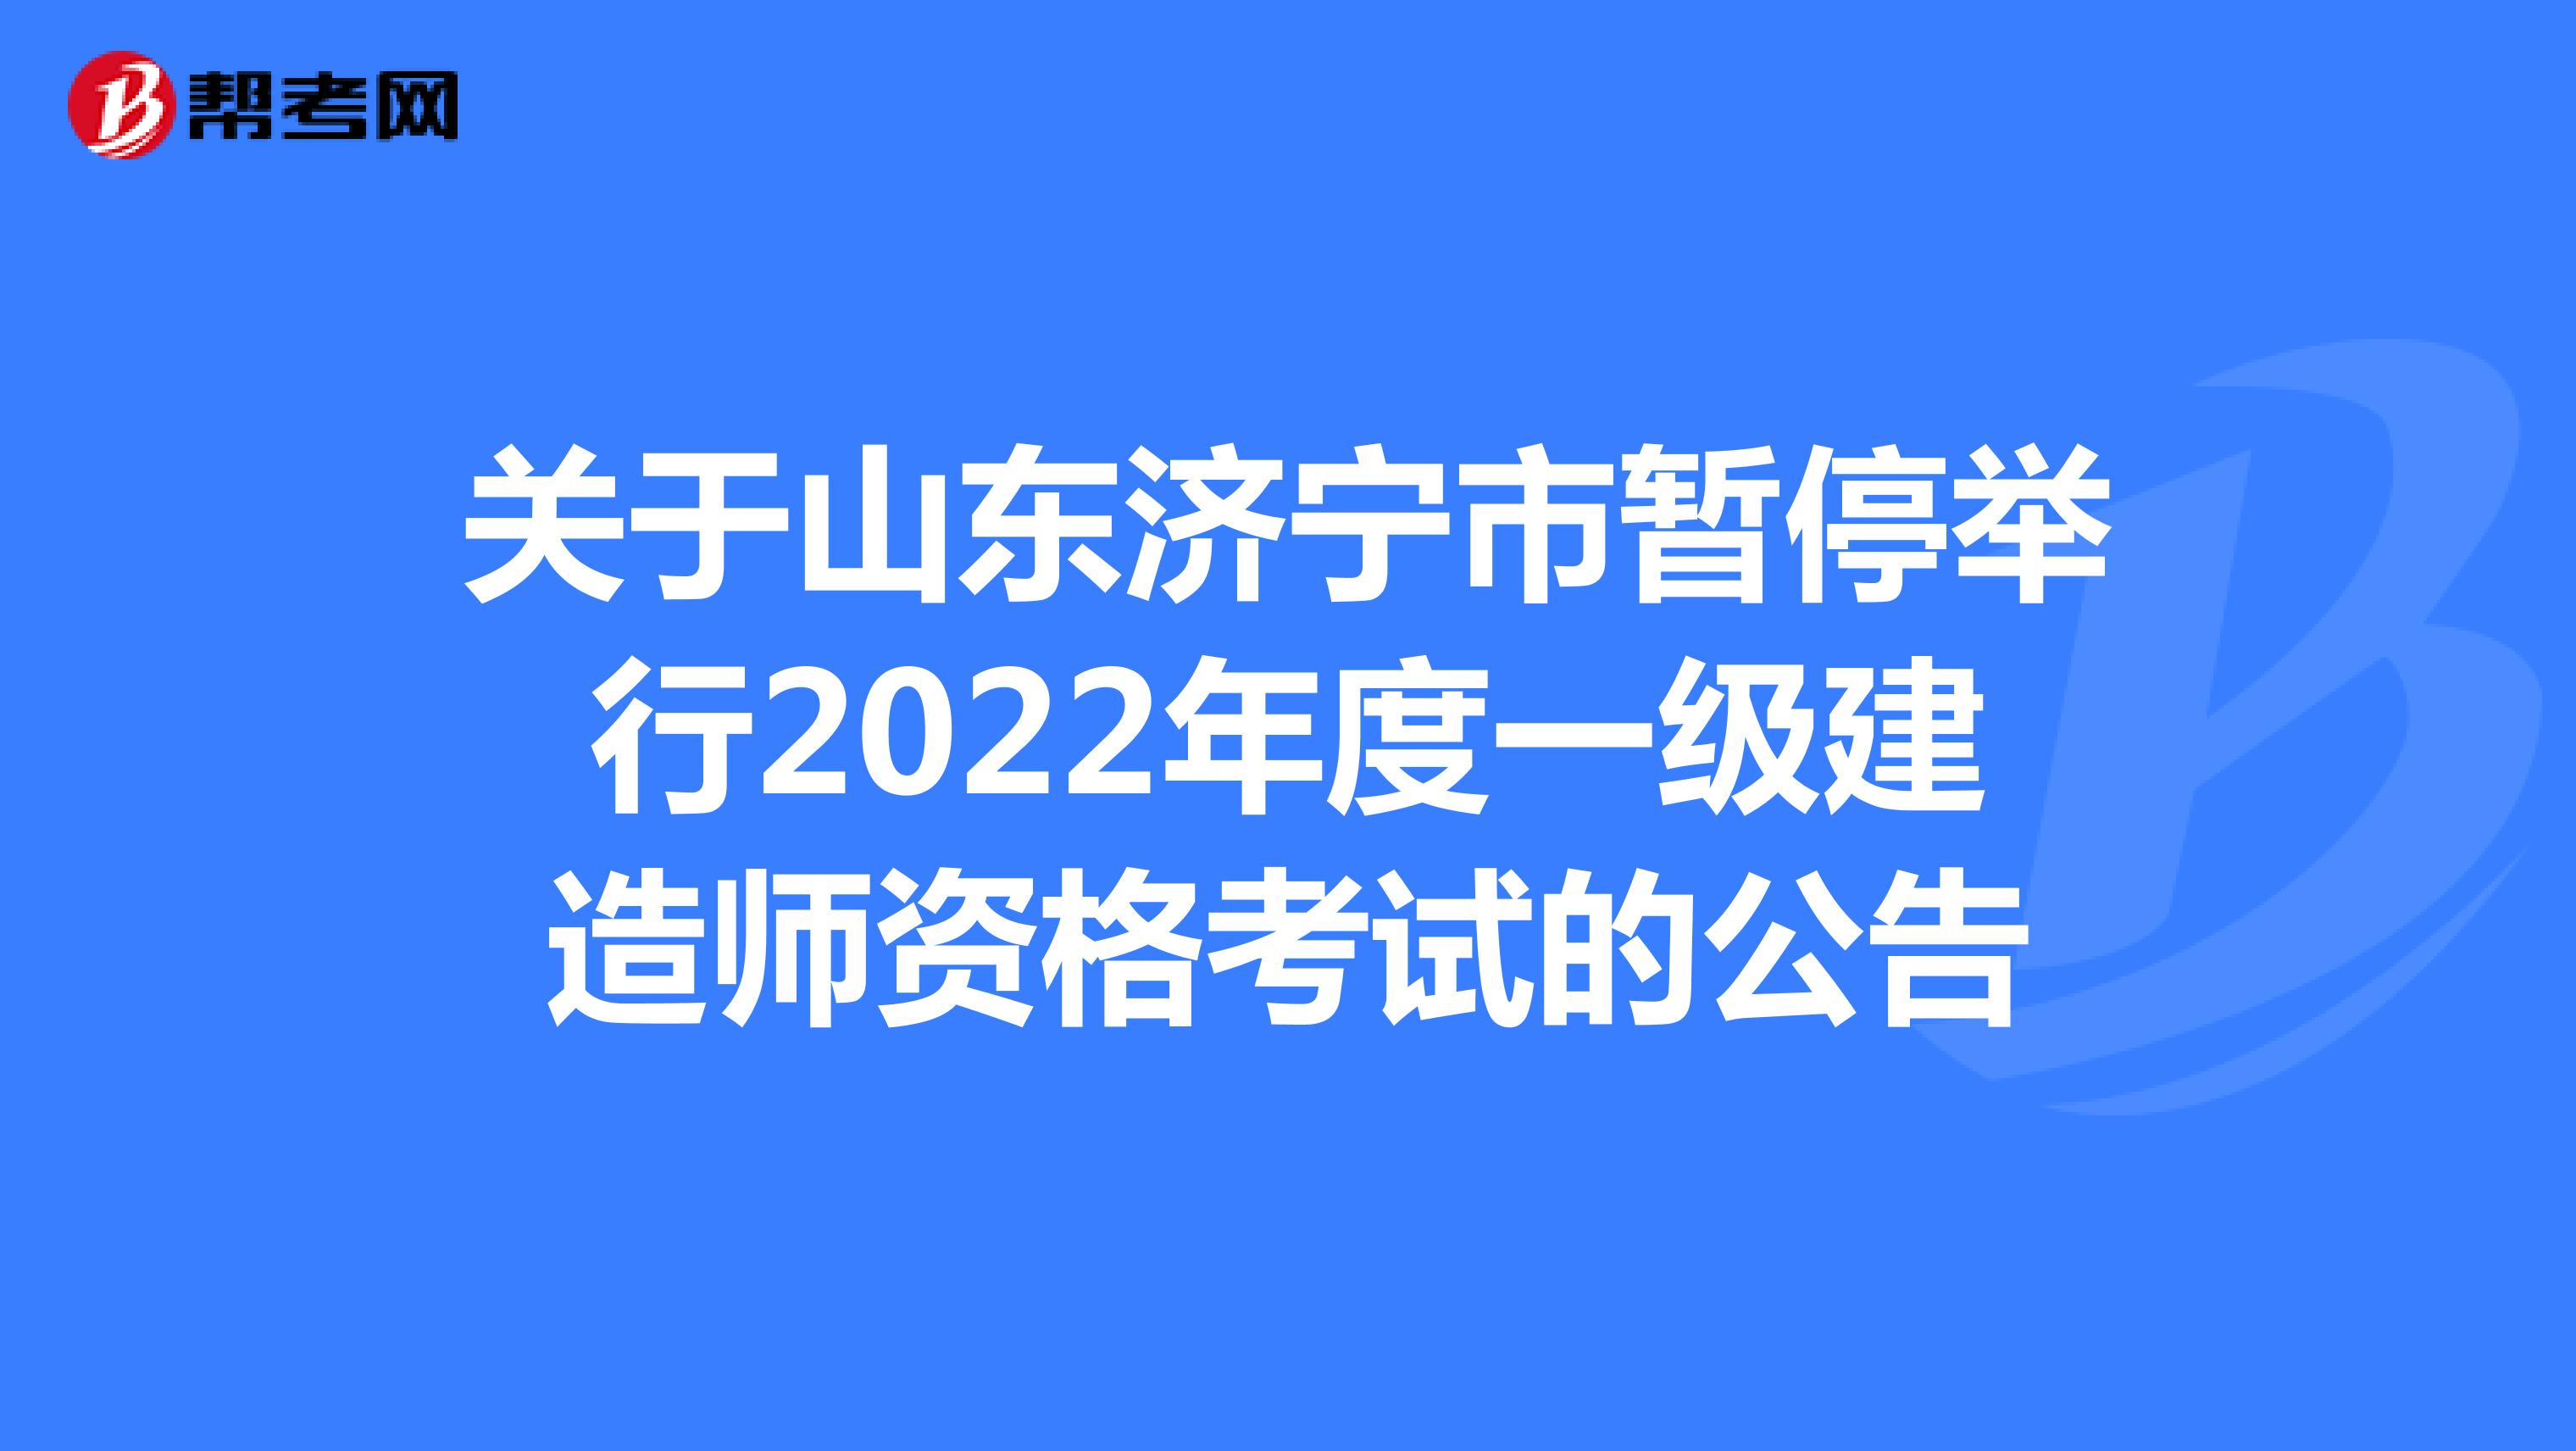 关于山东济宁市暂停举行2022年度一级建造师资格考试的公告